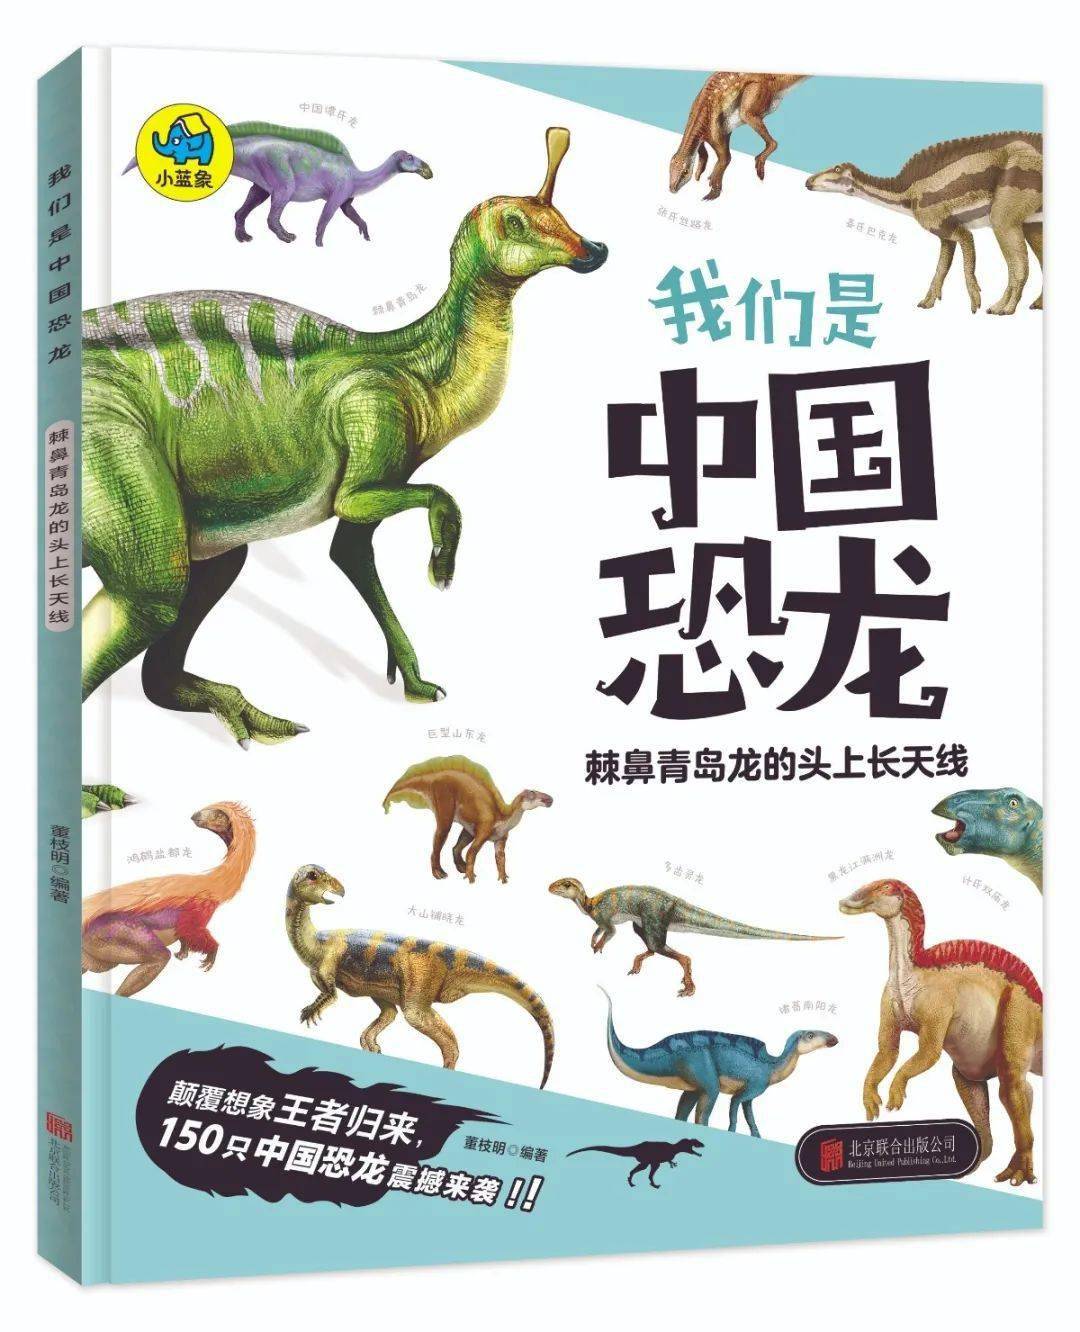 叮一套专为儿童设计的中国恐龙百科书来喽